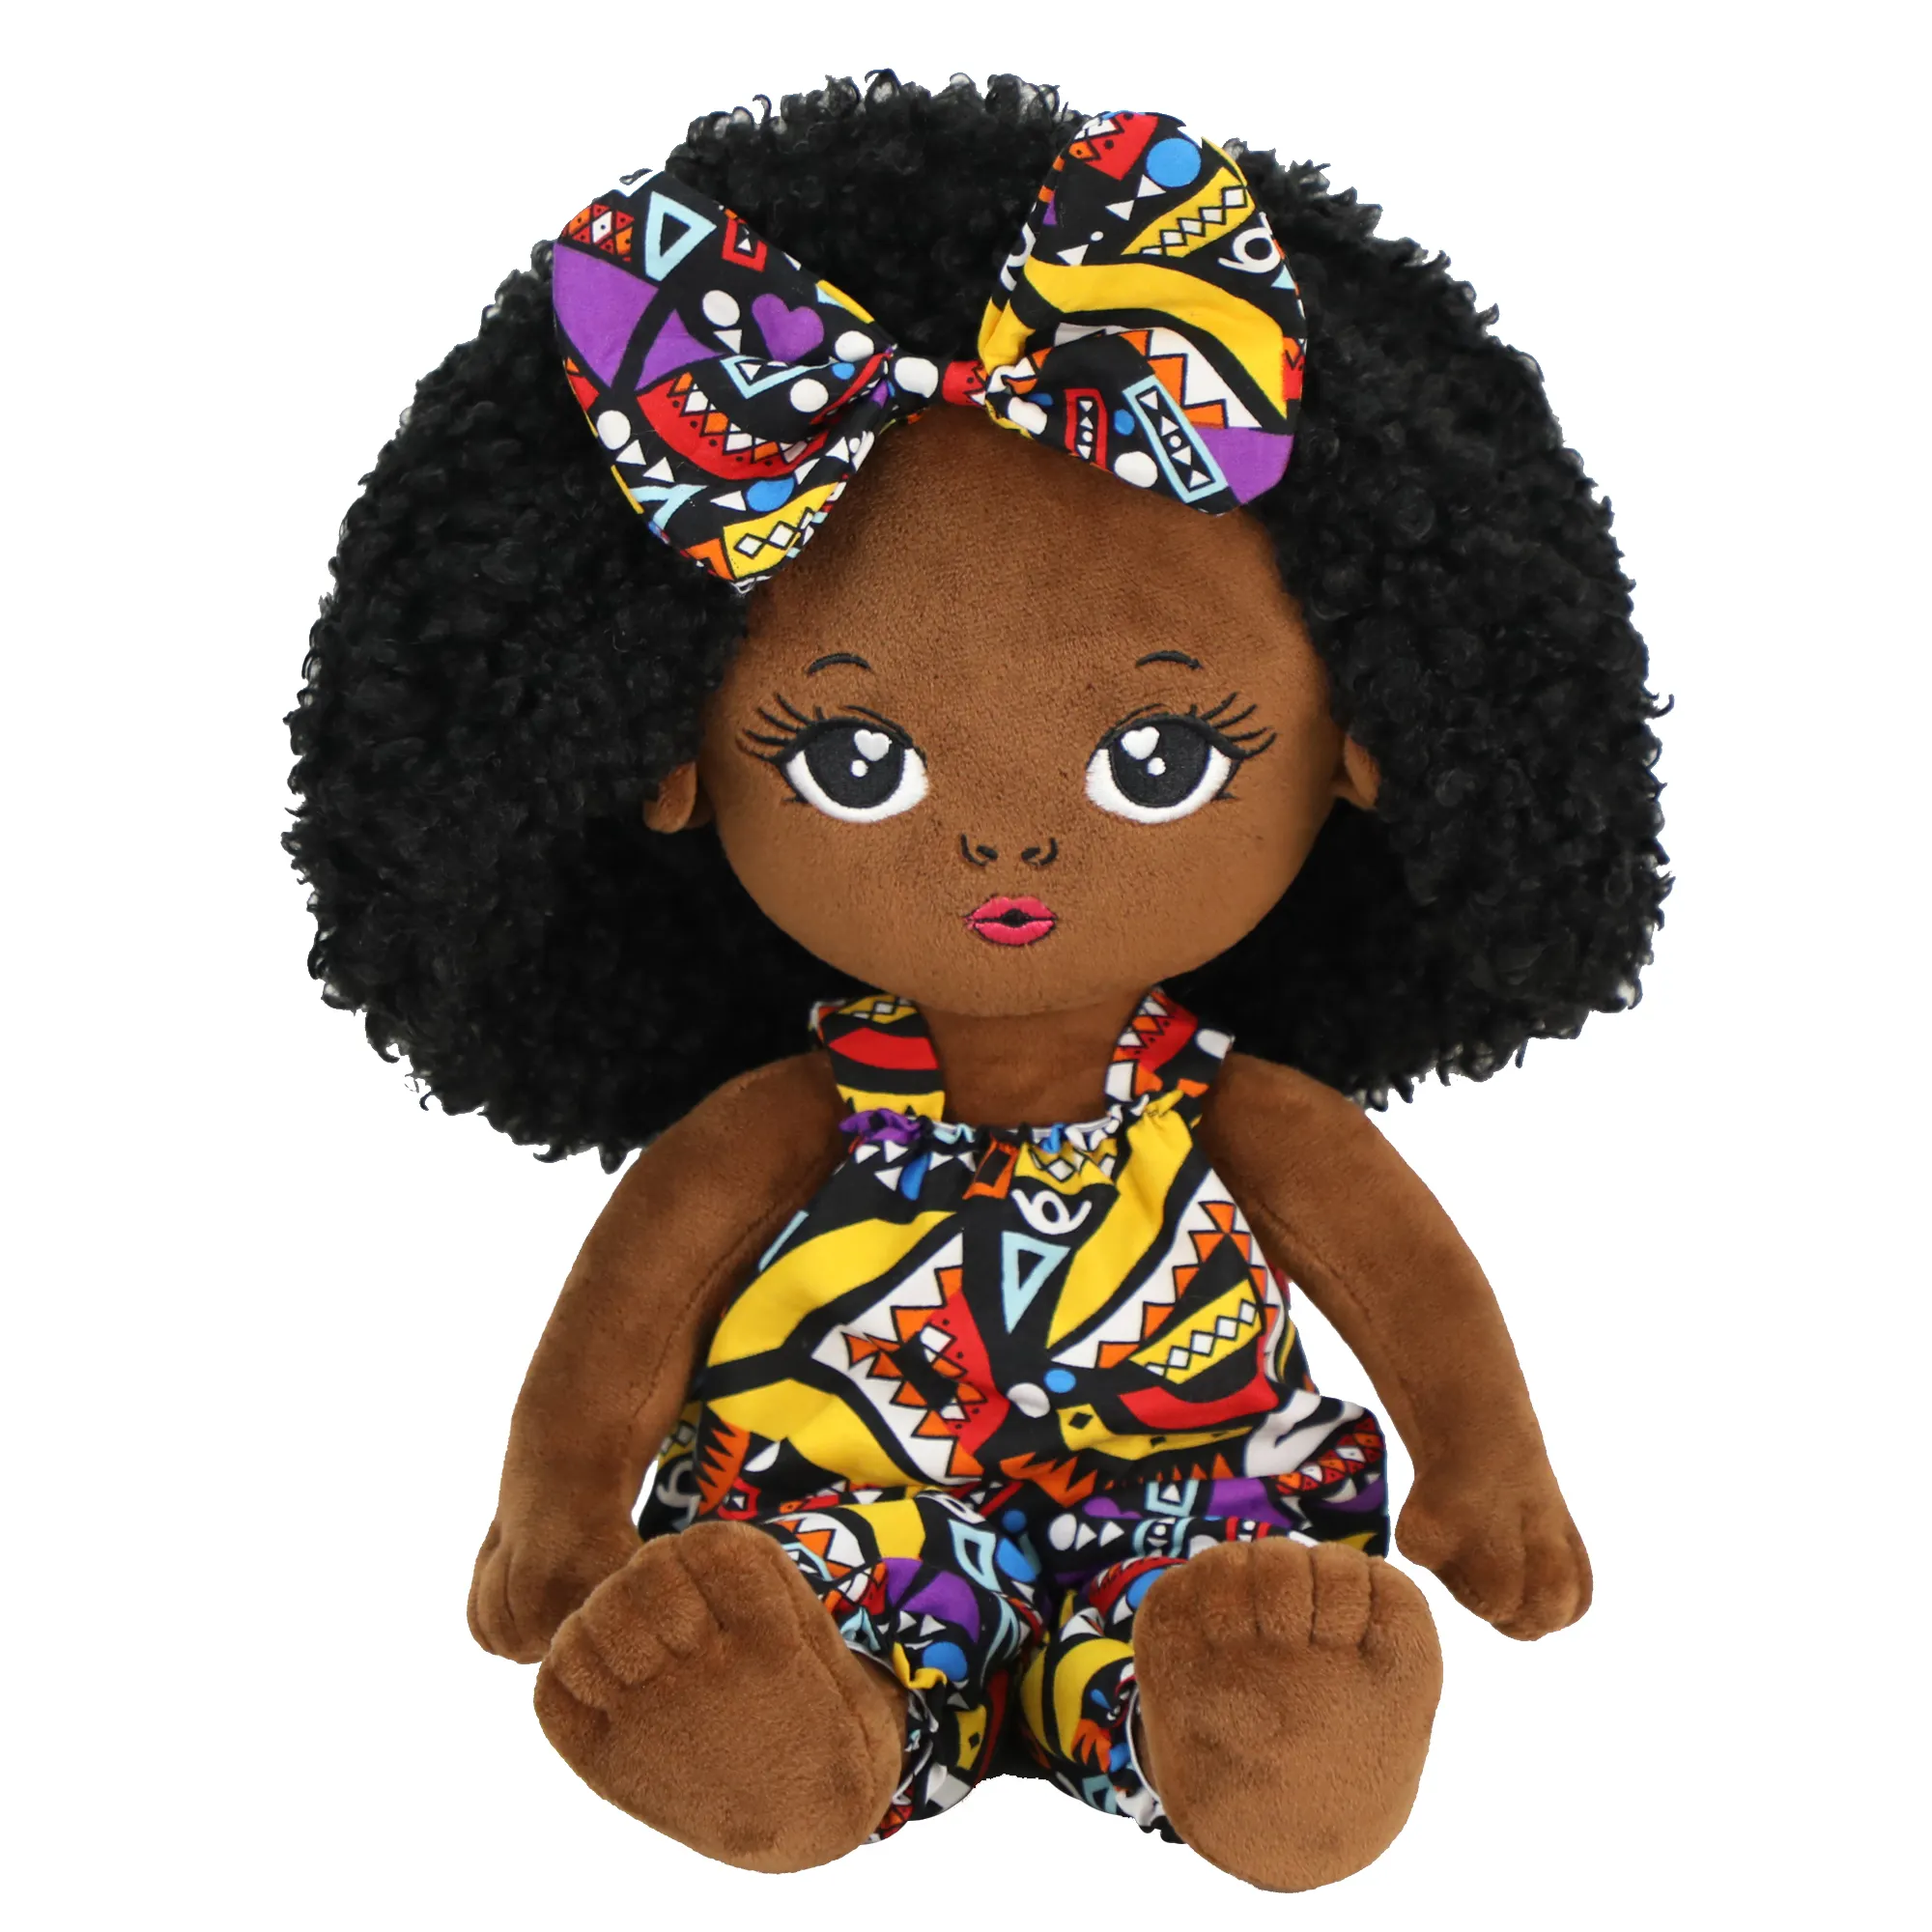 19inch Fashion African Girl Cloth Rag Doll Dress Up Cute Stuffed Soft Plush Baby Black Doll